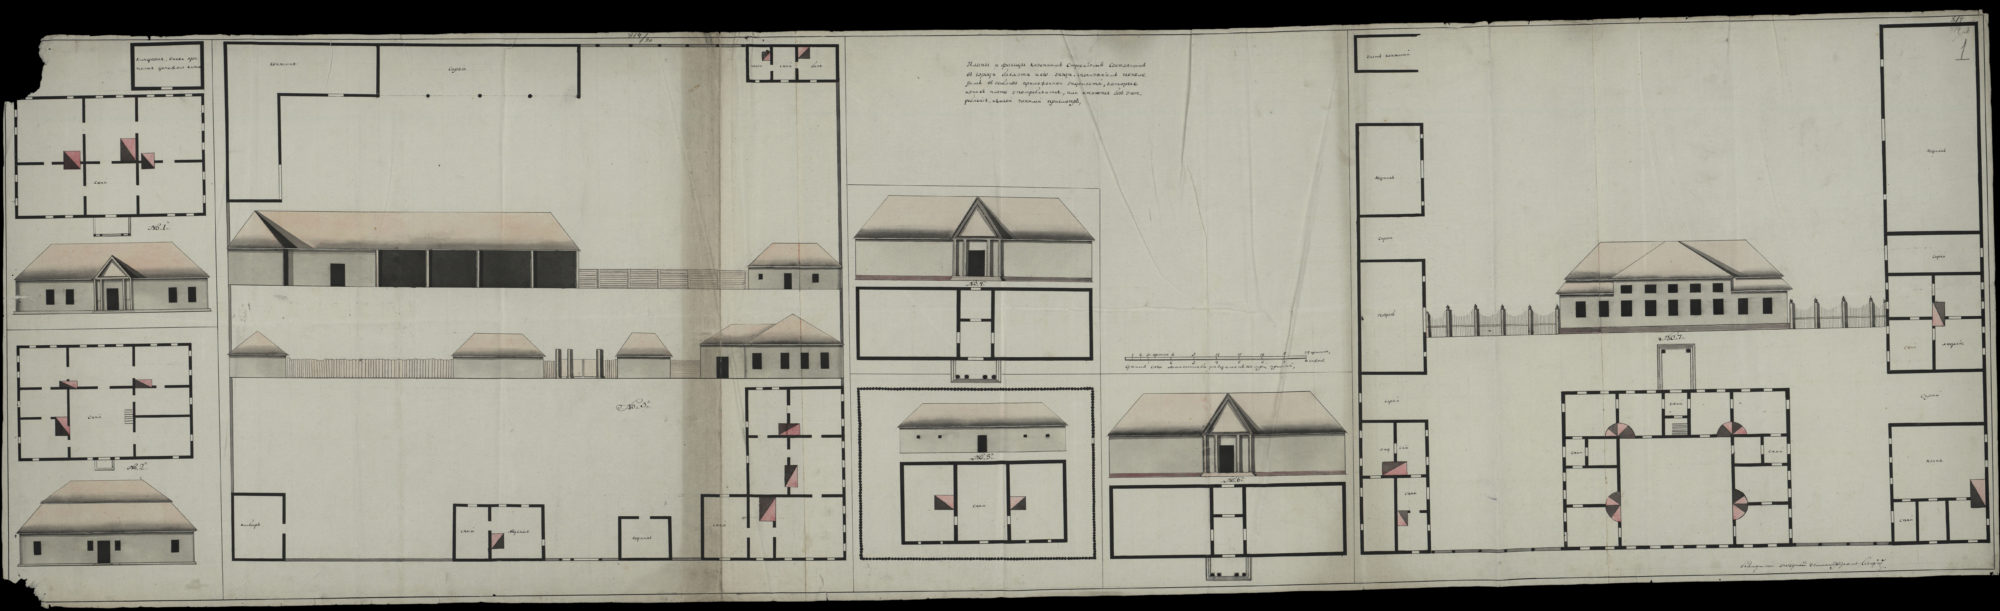 історичний план будівель Бахмута у 1800 році